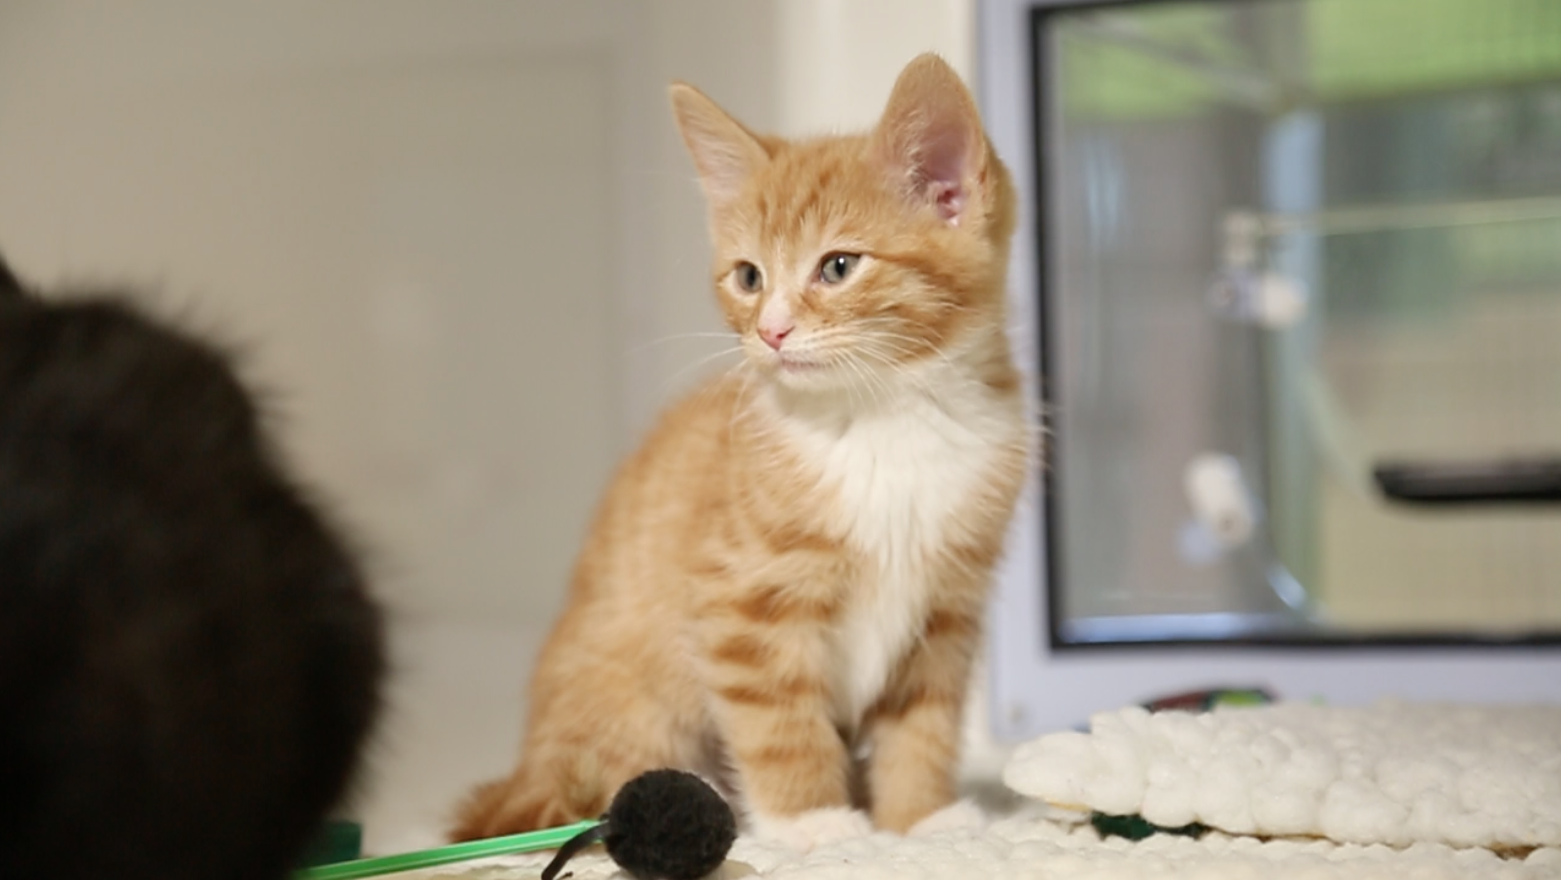 Adopt a cat | Find a cat to adopt 